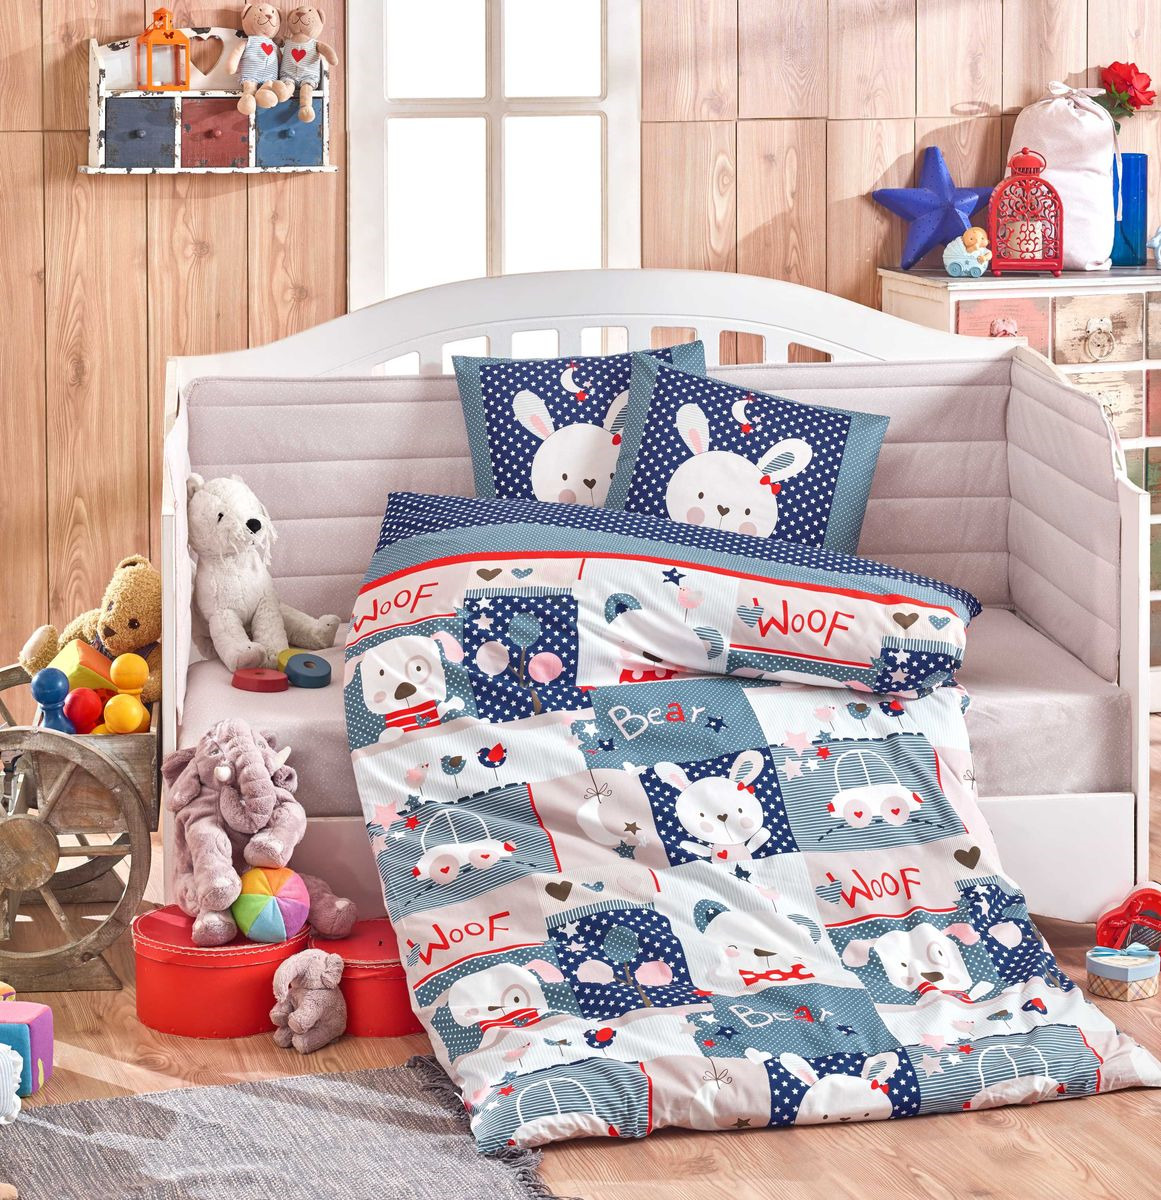 Комплект постельного белья Hobby Home Collection Snoopy, цвет: синий. 1501002159